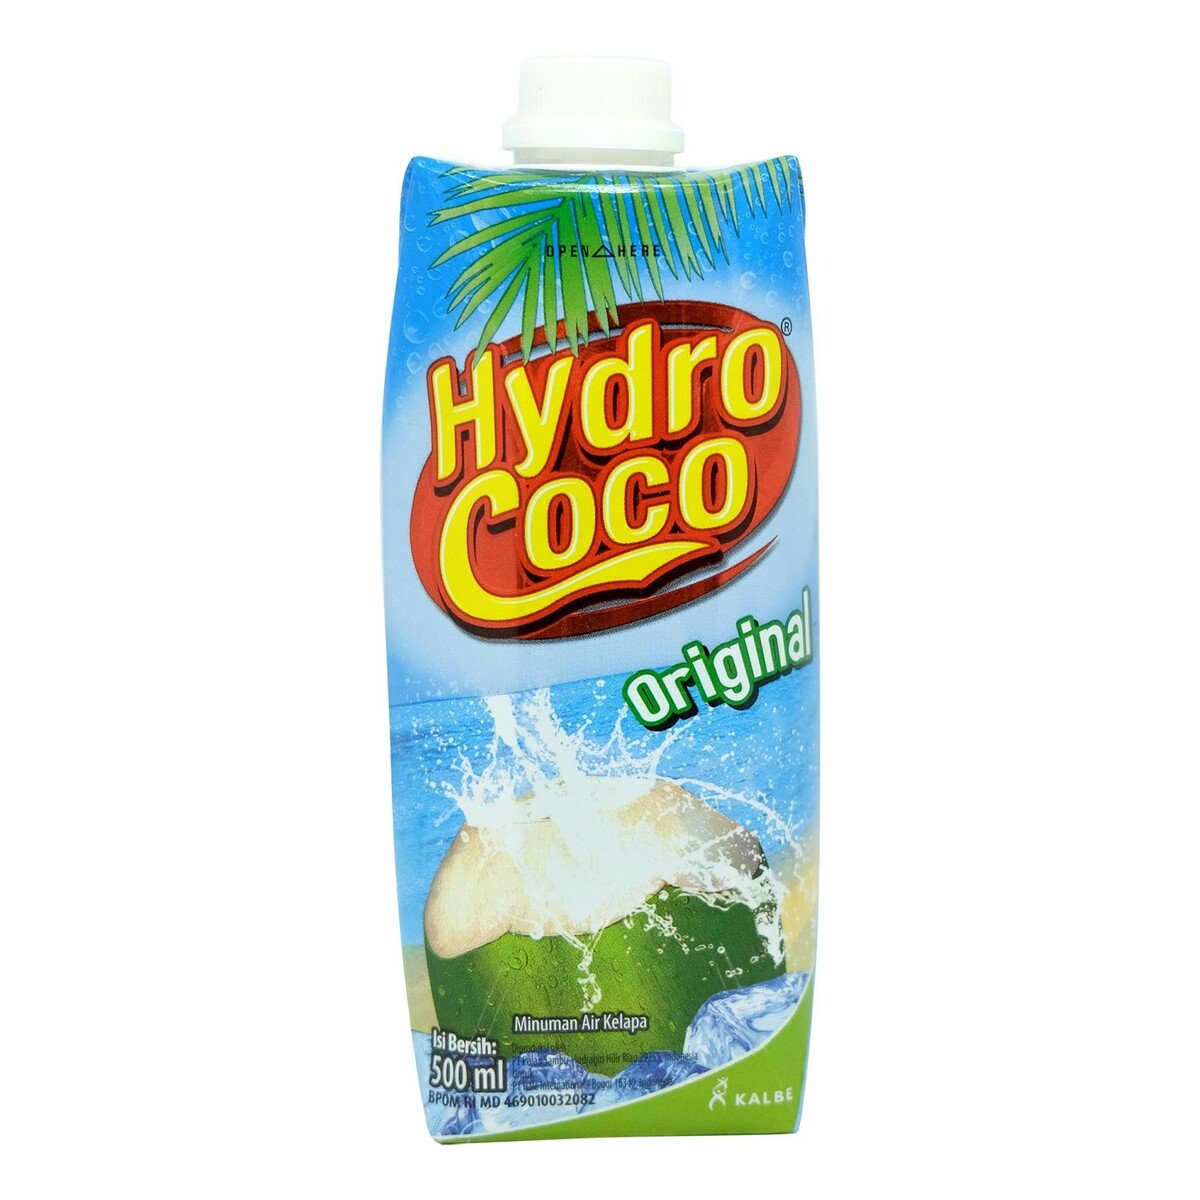 Hydro Coco 500ml